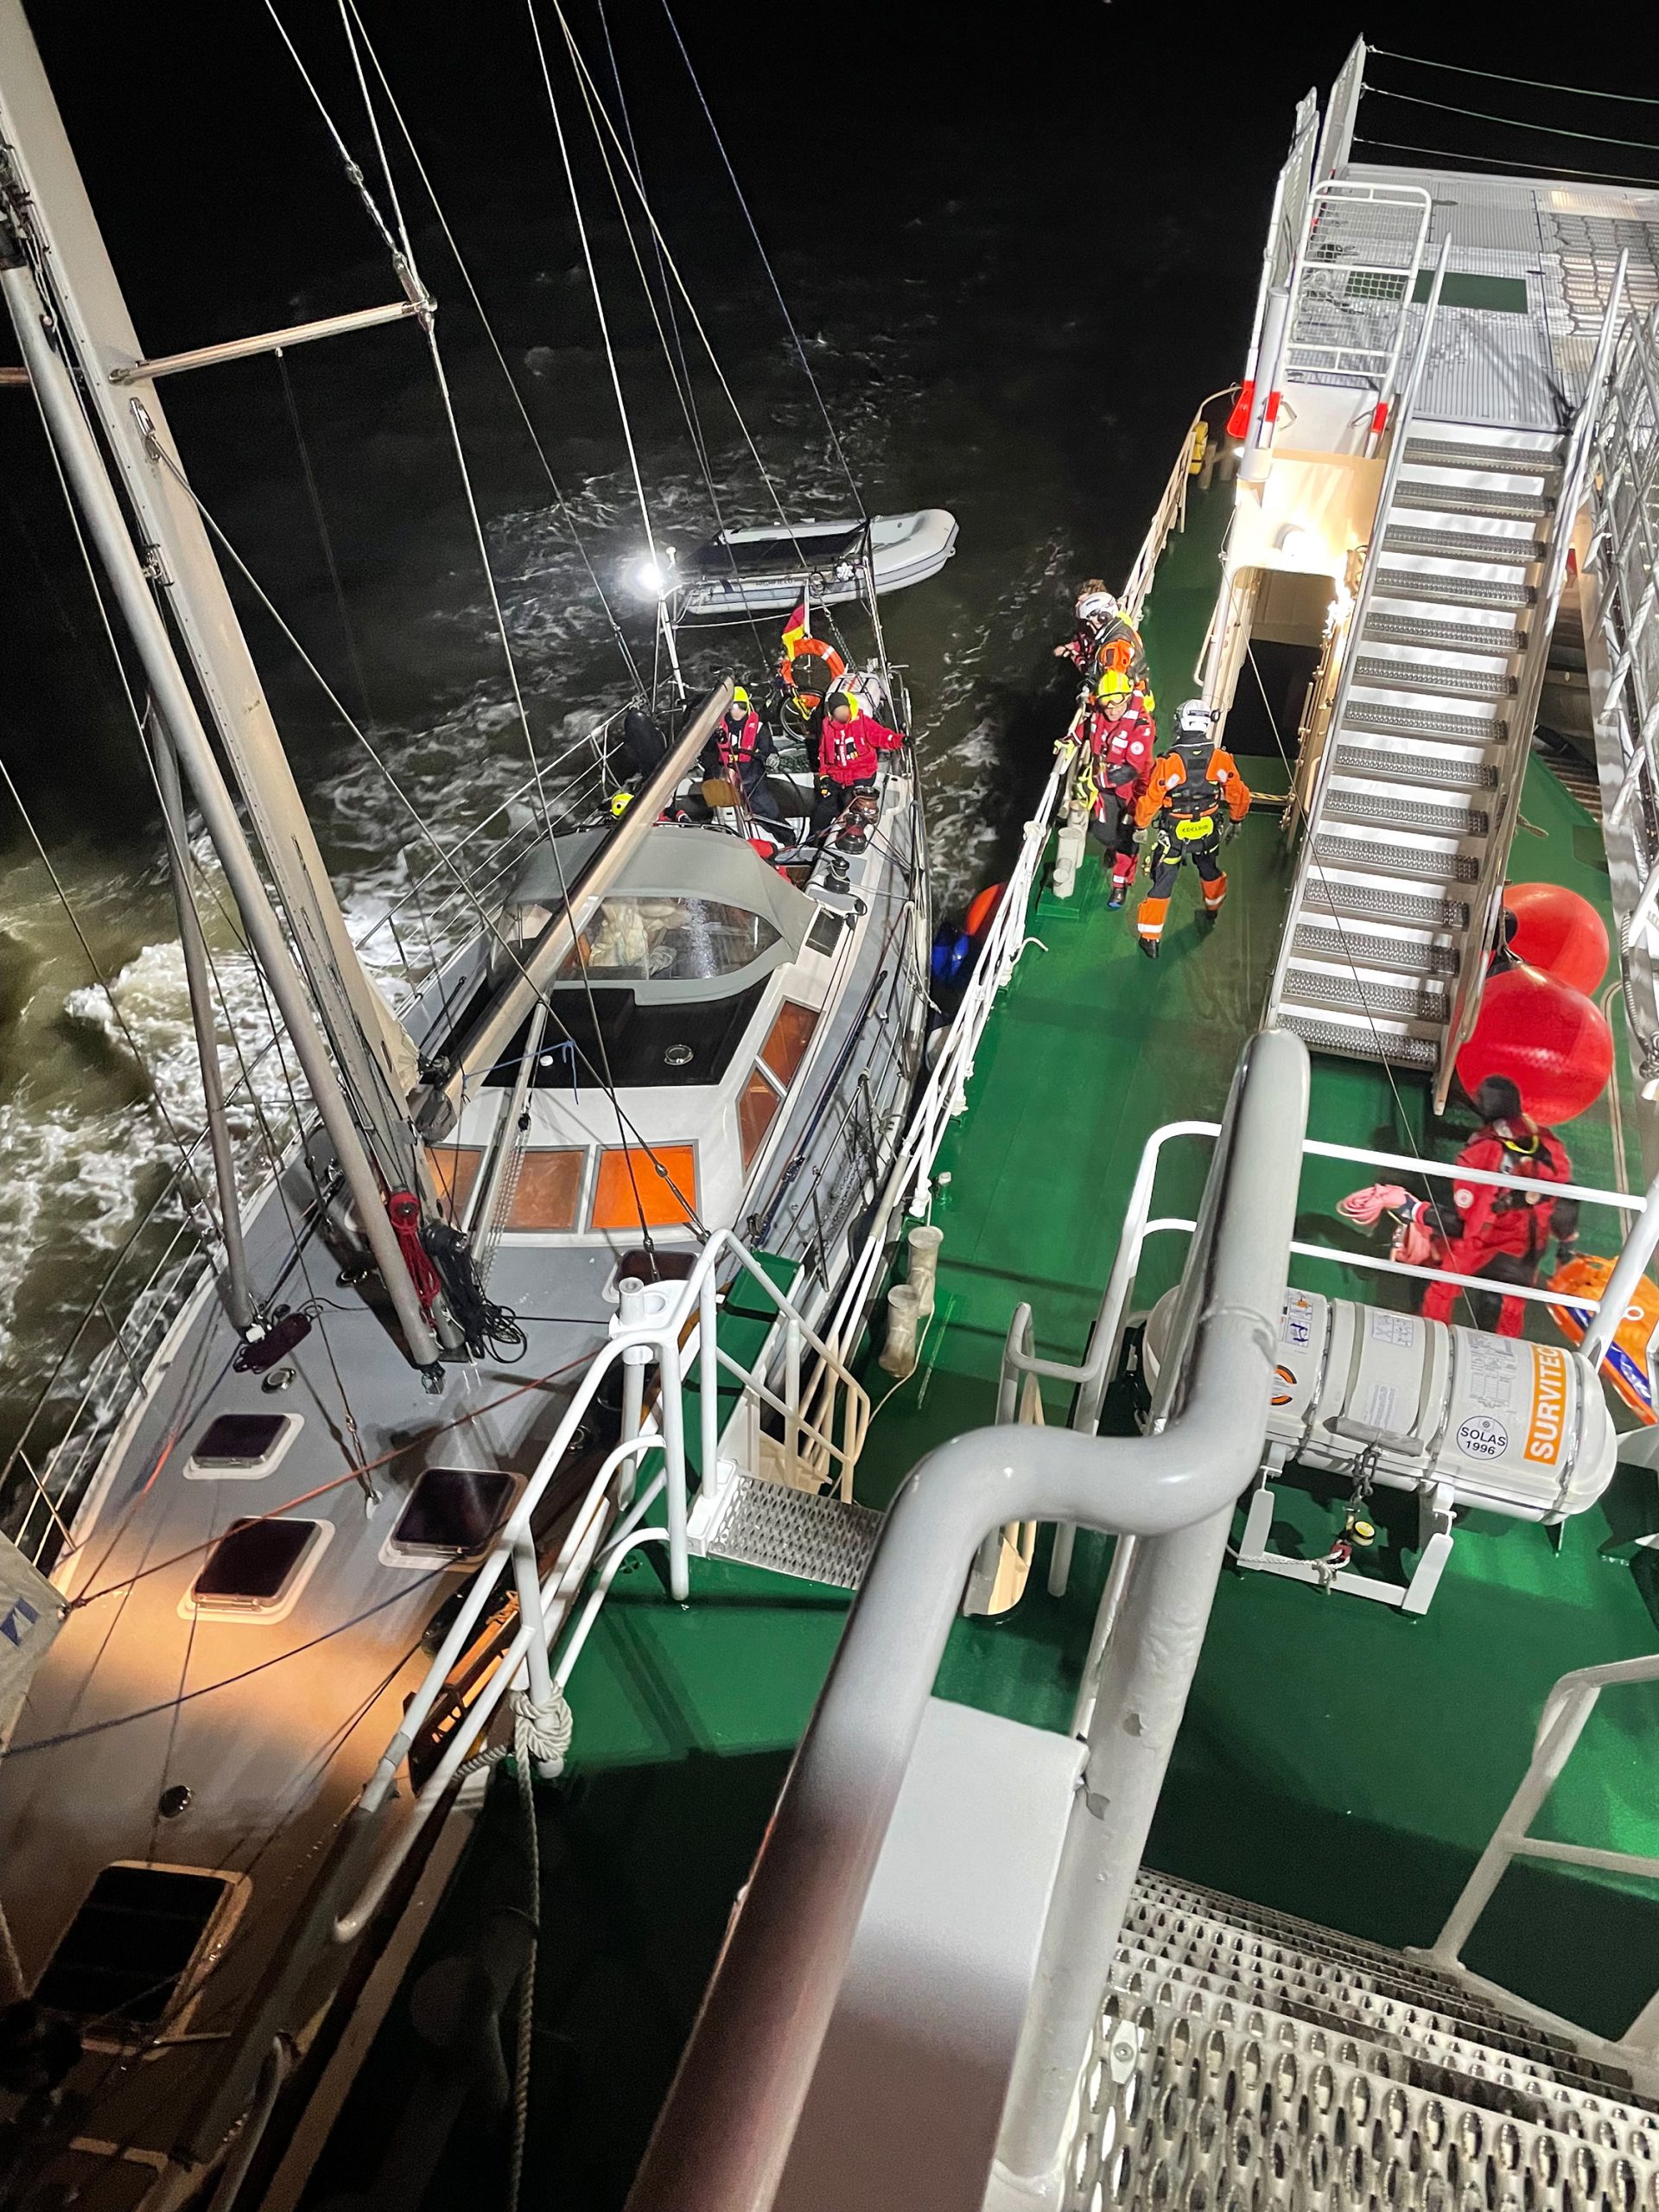 Nahe der Insel Minsener Oog konnte der Seenotrettungskreuzer "Hermann Marwede" bei der Segelyacht längsseits gehen. Die Seenotretter stiegen auf die Yacht über, um dem verletzten Skipper zu helfen.